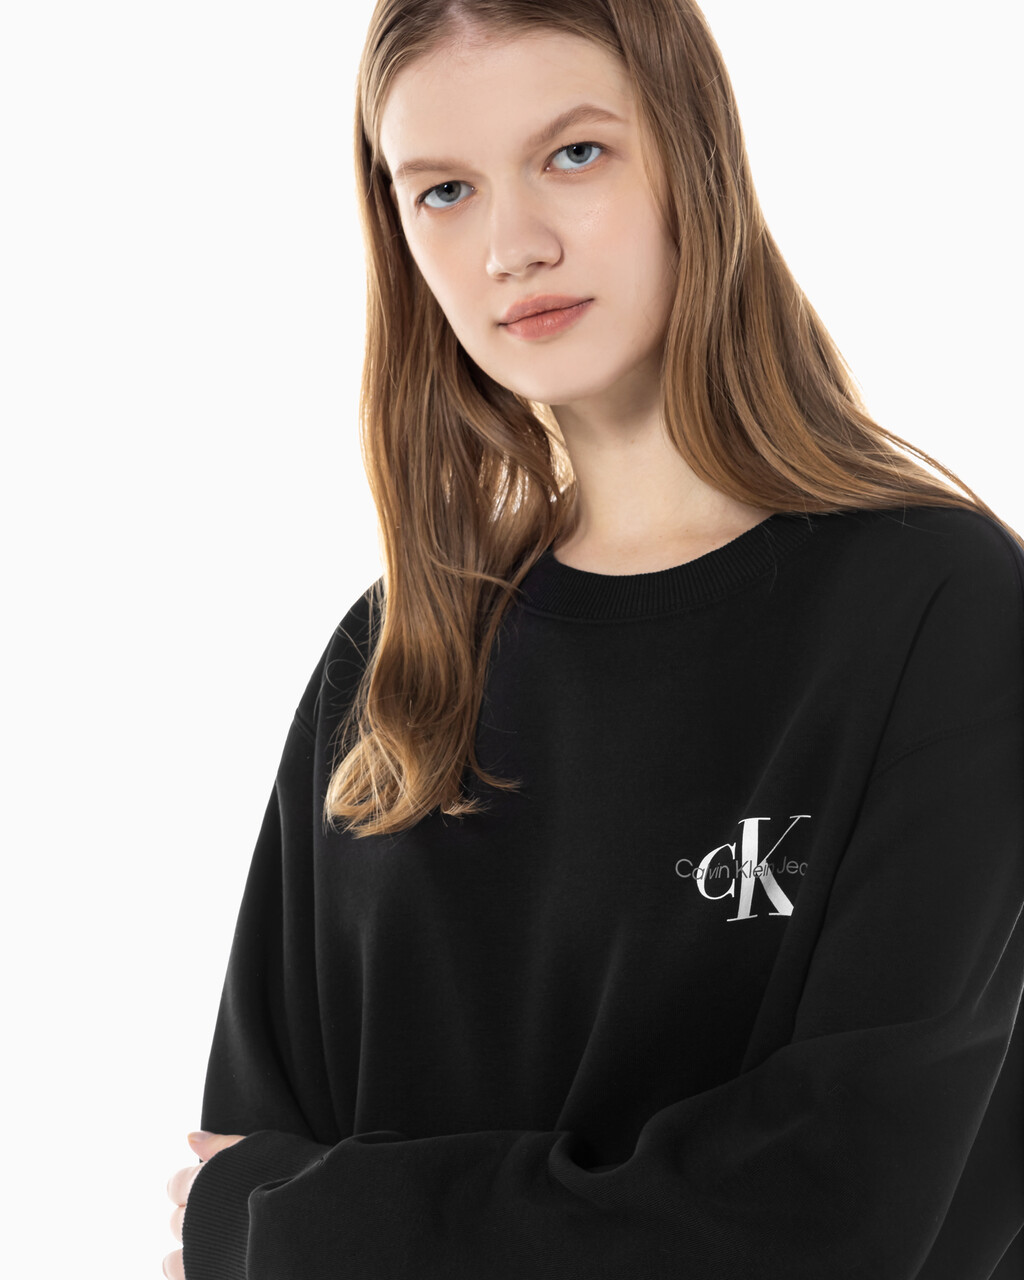 Buy 남녀공용 릴렉스핏 스몰 모노그램 로고 기모 스웨트셔츠 in color CK BLACK